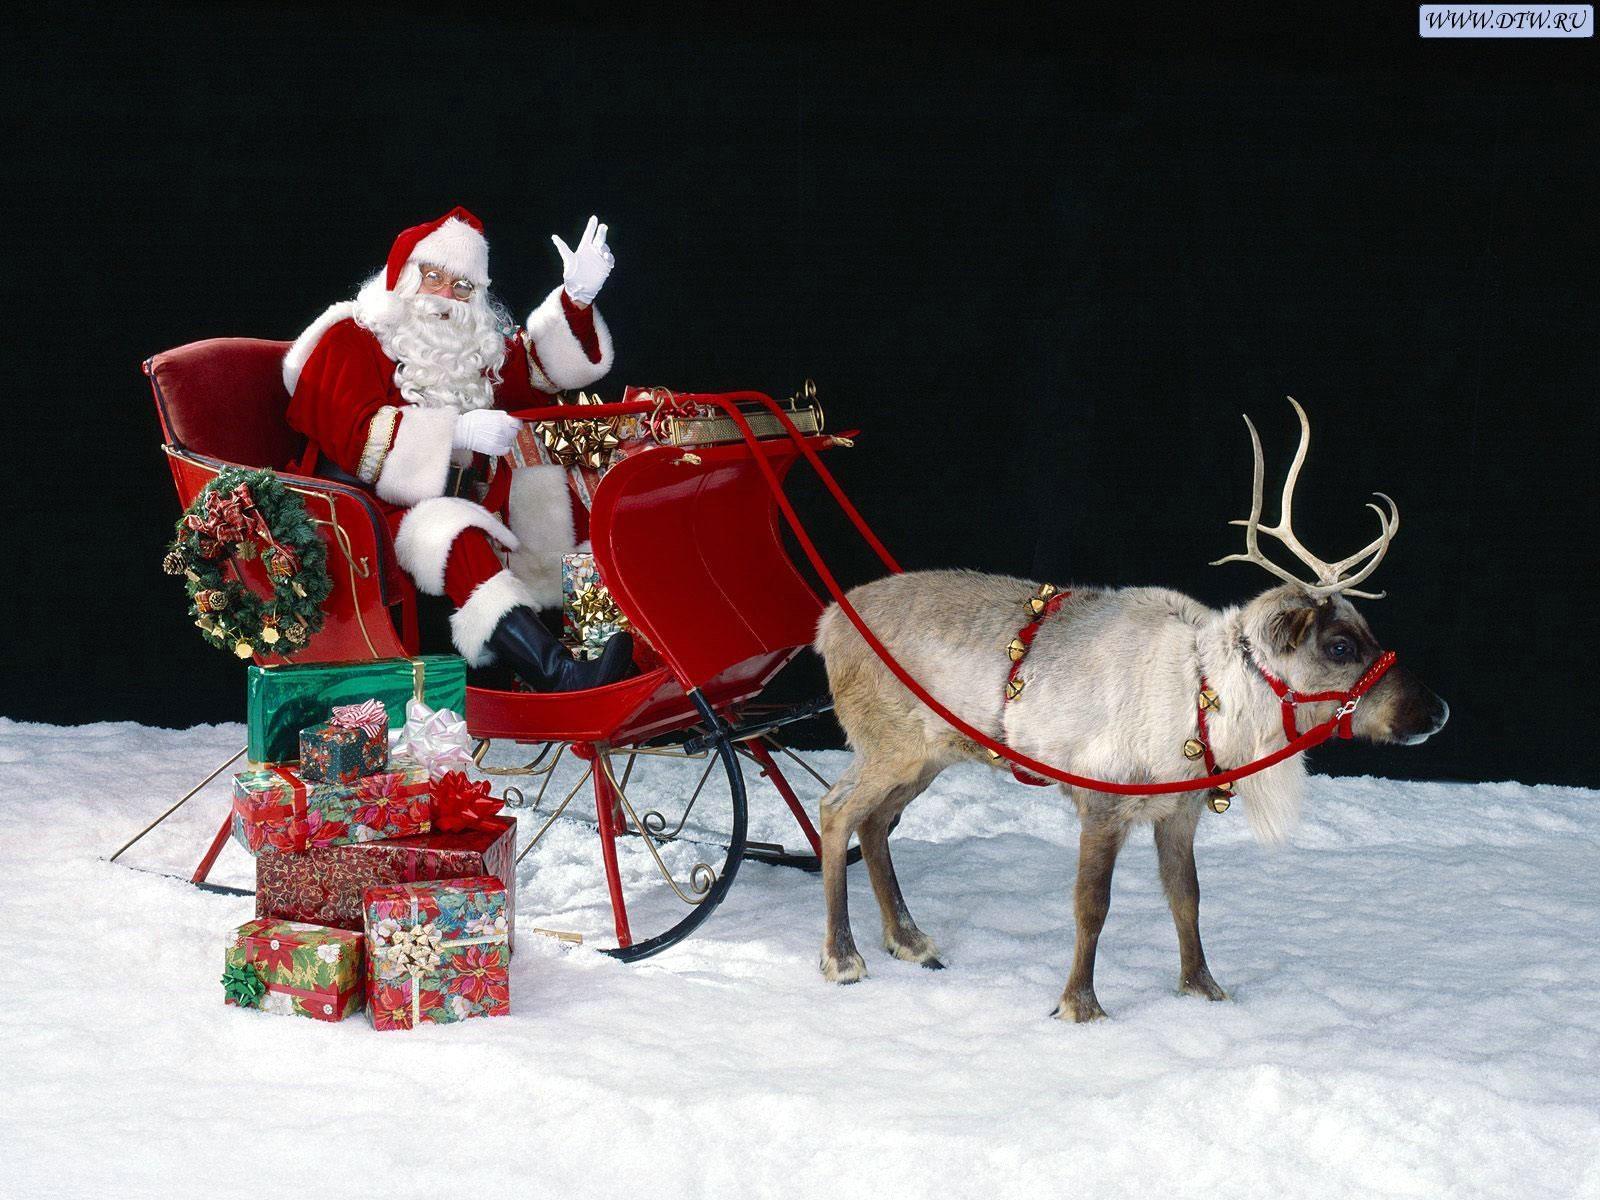 Photos Christmas sledge Santa Claus Holidays 600x450 New year Sled sleigh